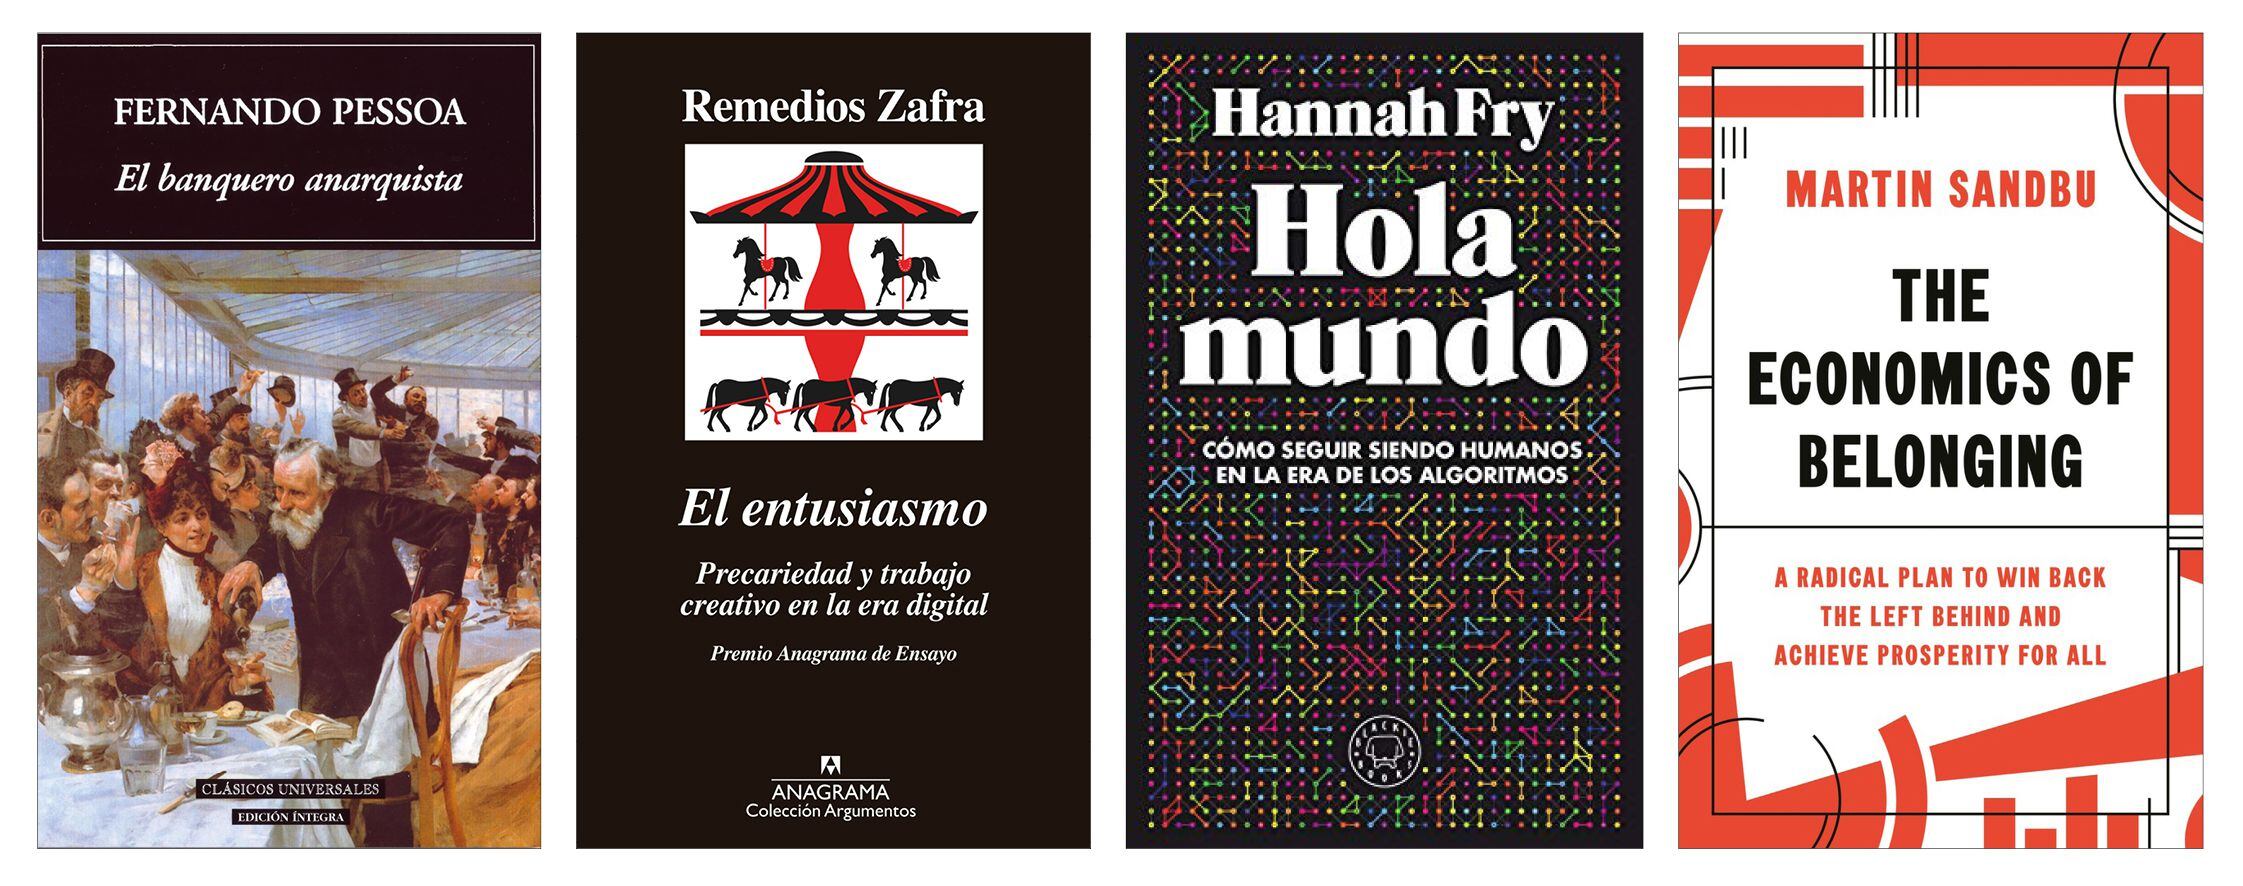 Libros recomendados por Luis de Guindos, Yolanda Díaz, Nadia Calviño y José Luis Escrivá. 